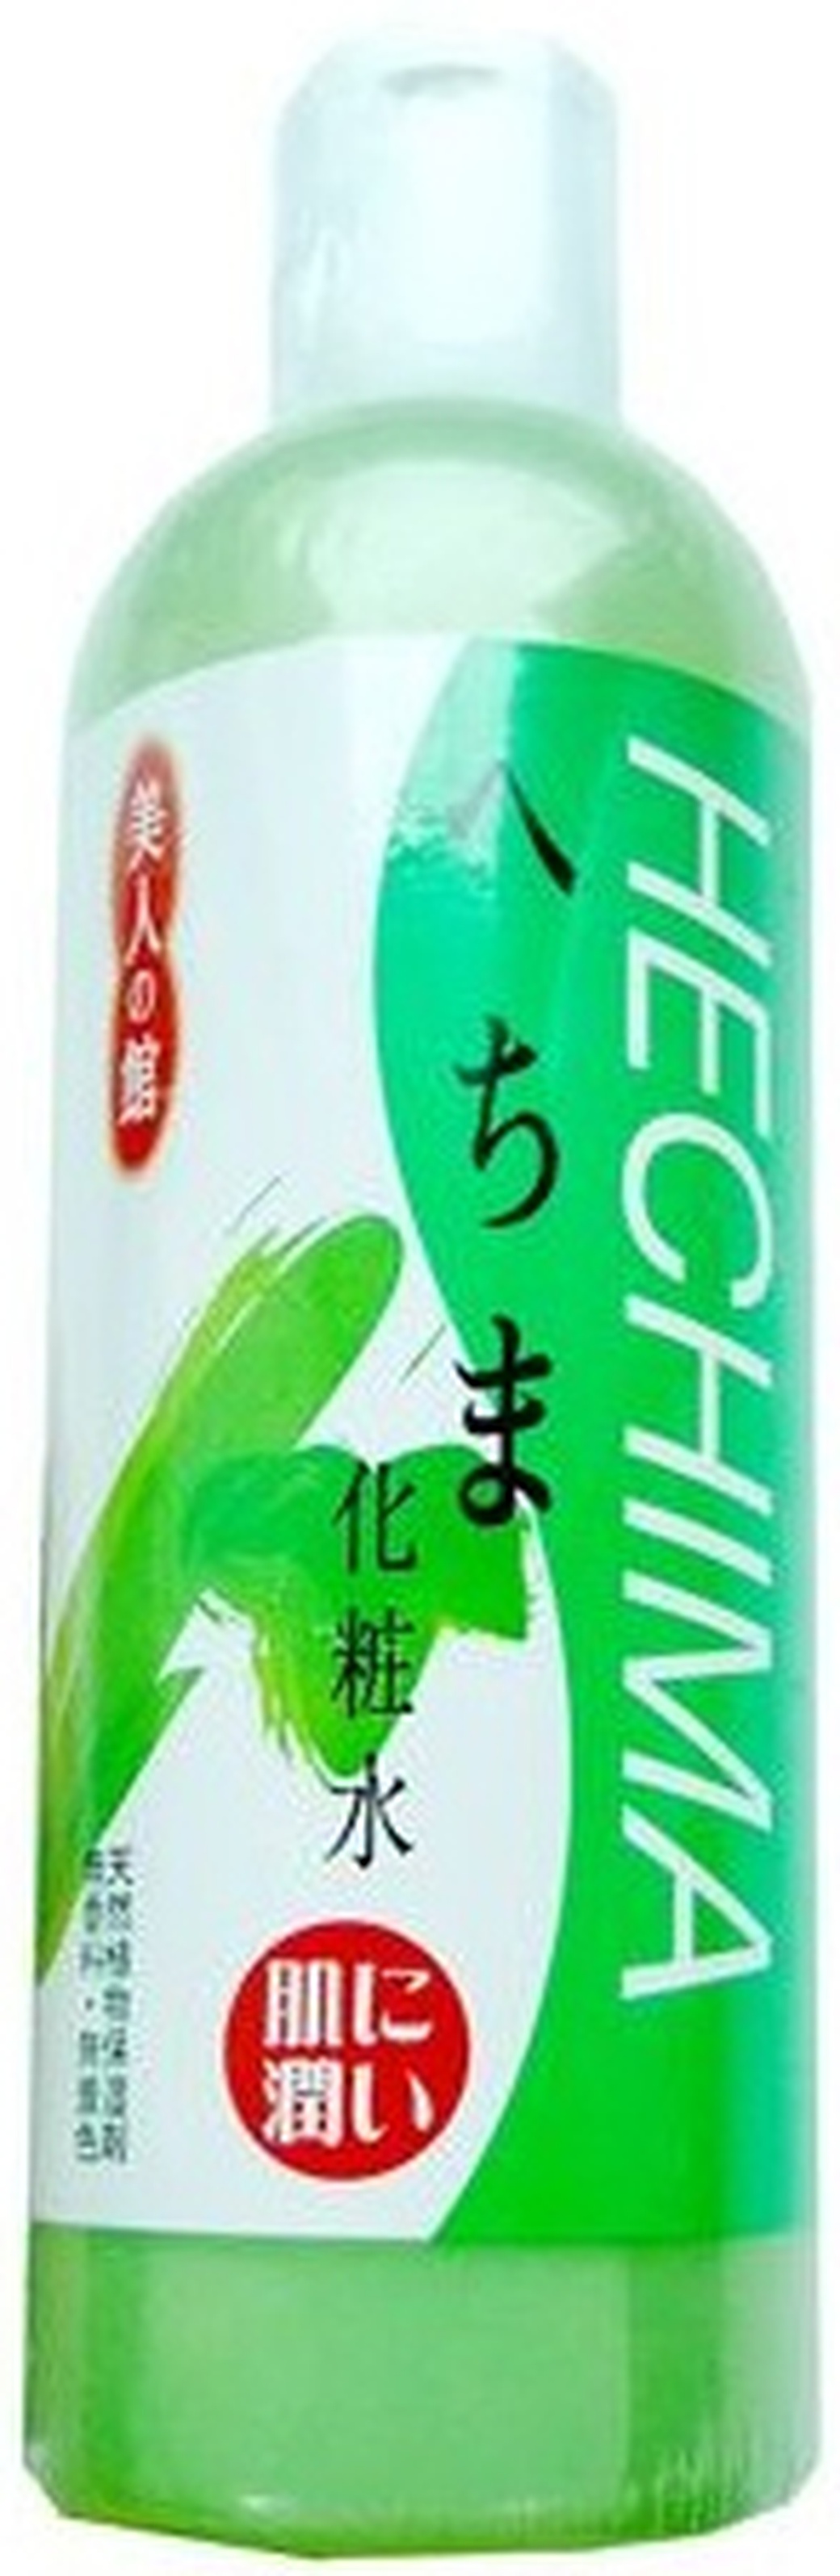 Kurobara "Hechima" Увлажняющий лосьон для лица, с экстрактом тыквы, 400 мл фото